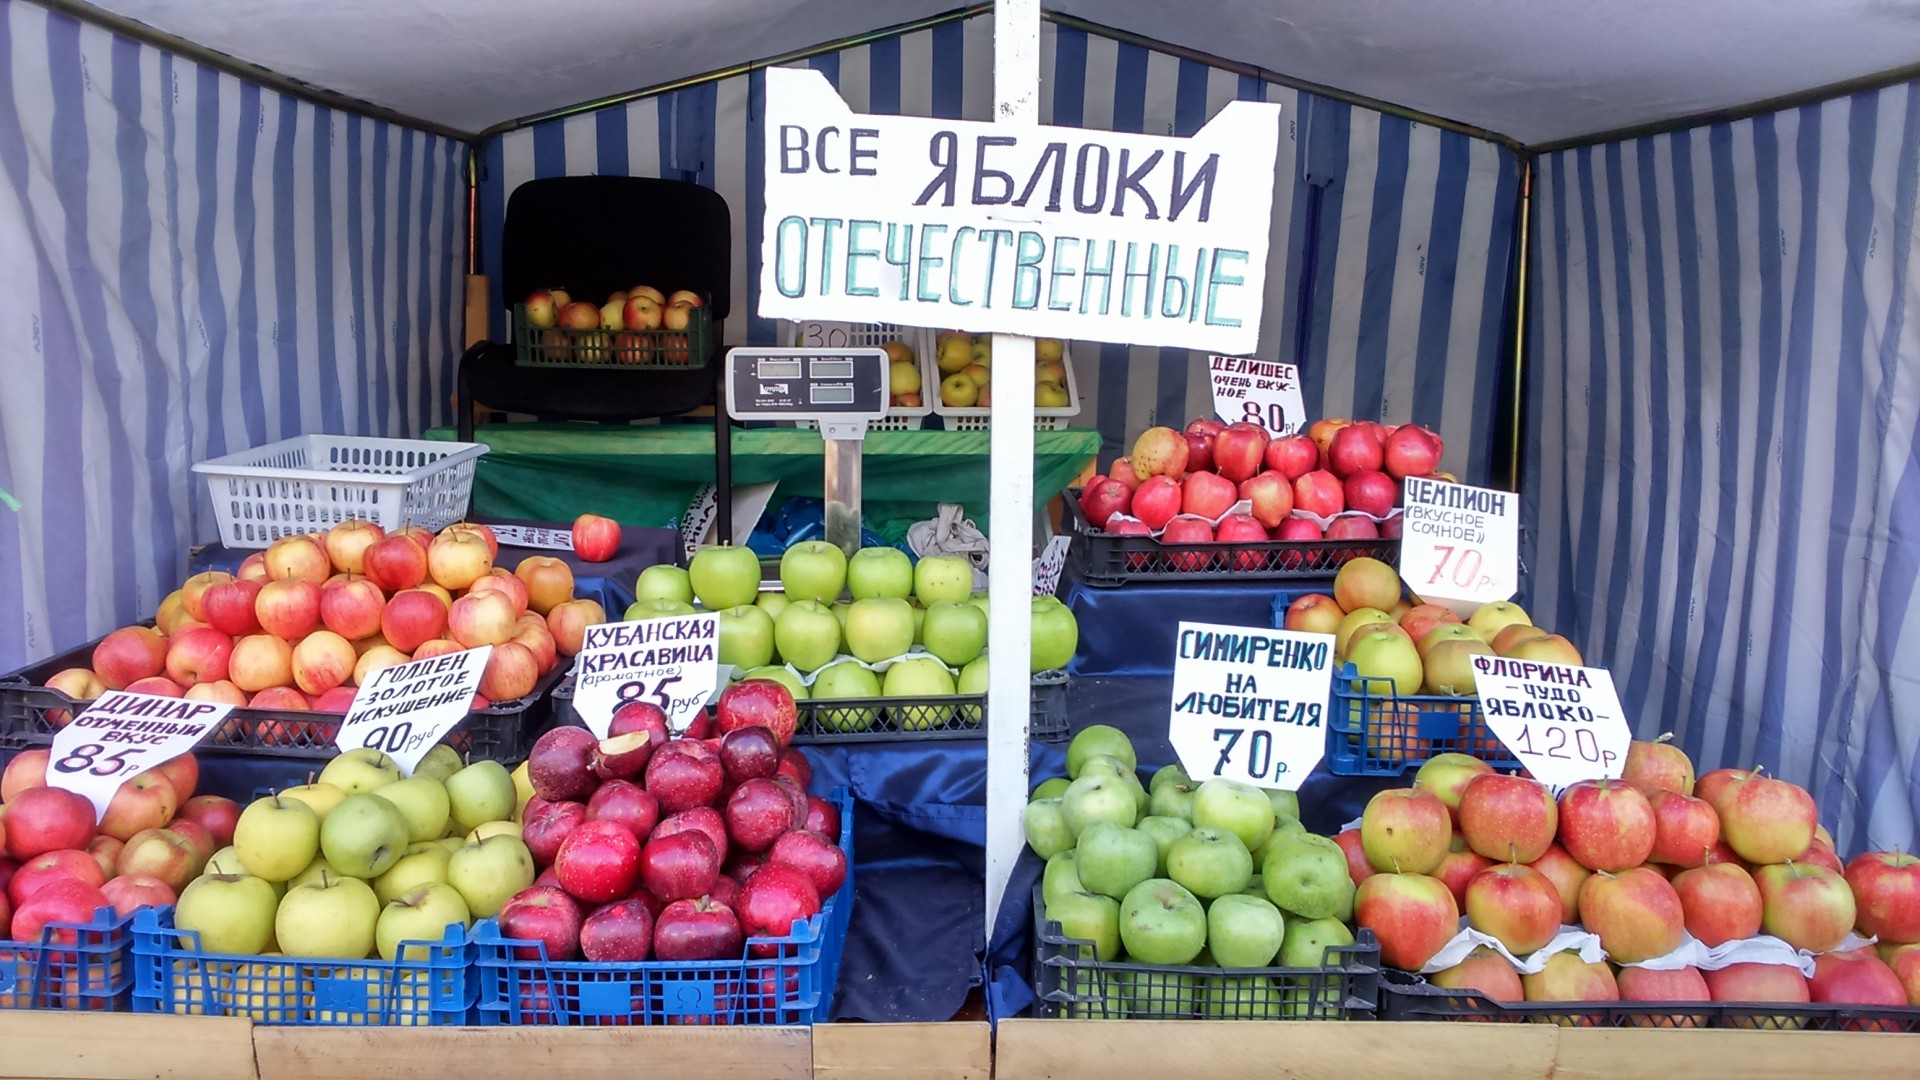 Яблоки купить рынок. Яблоки на рынке. Яблочный рынок. Продавец яблок на рынке. Яблоки на прилавке.